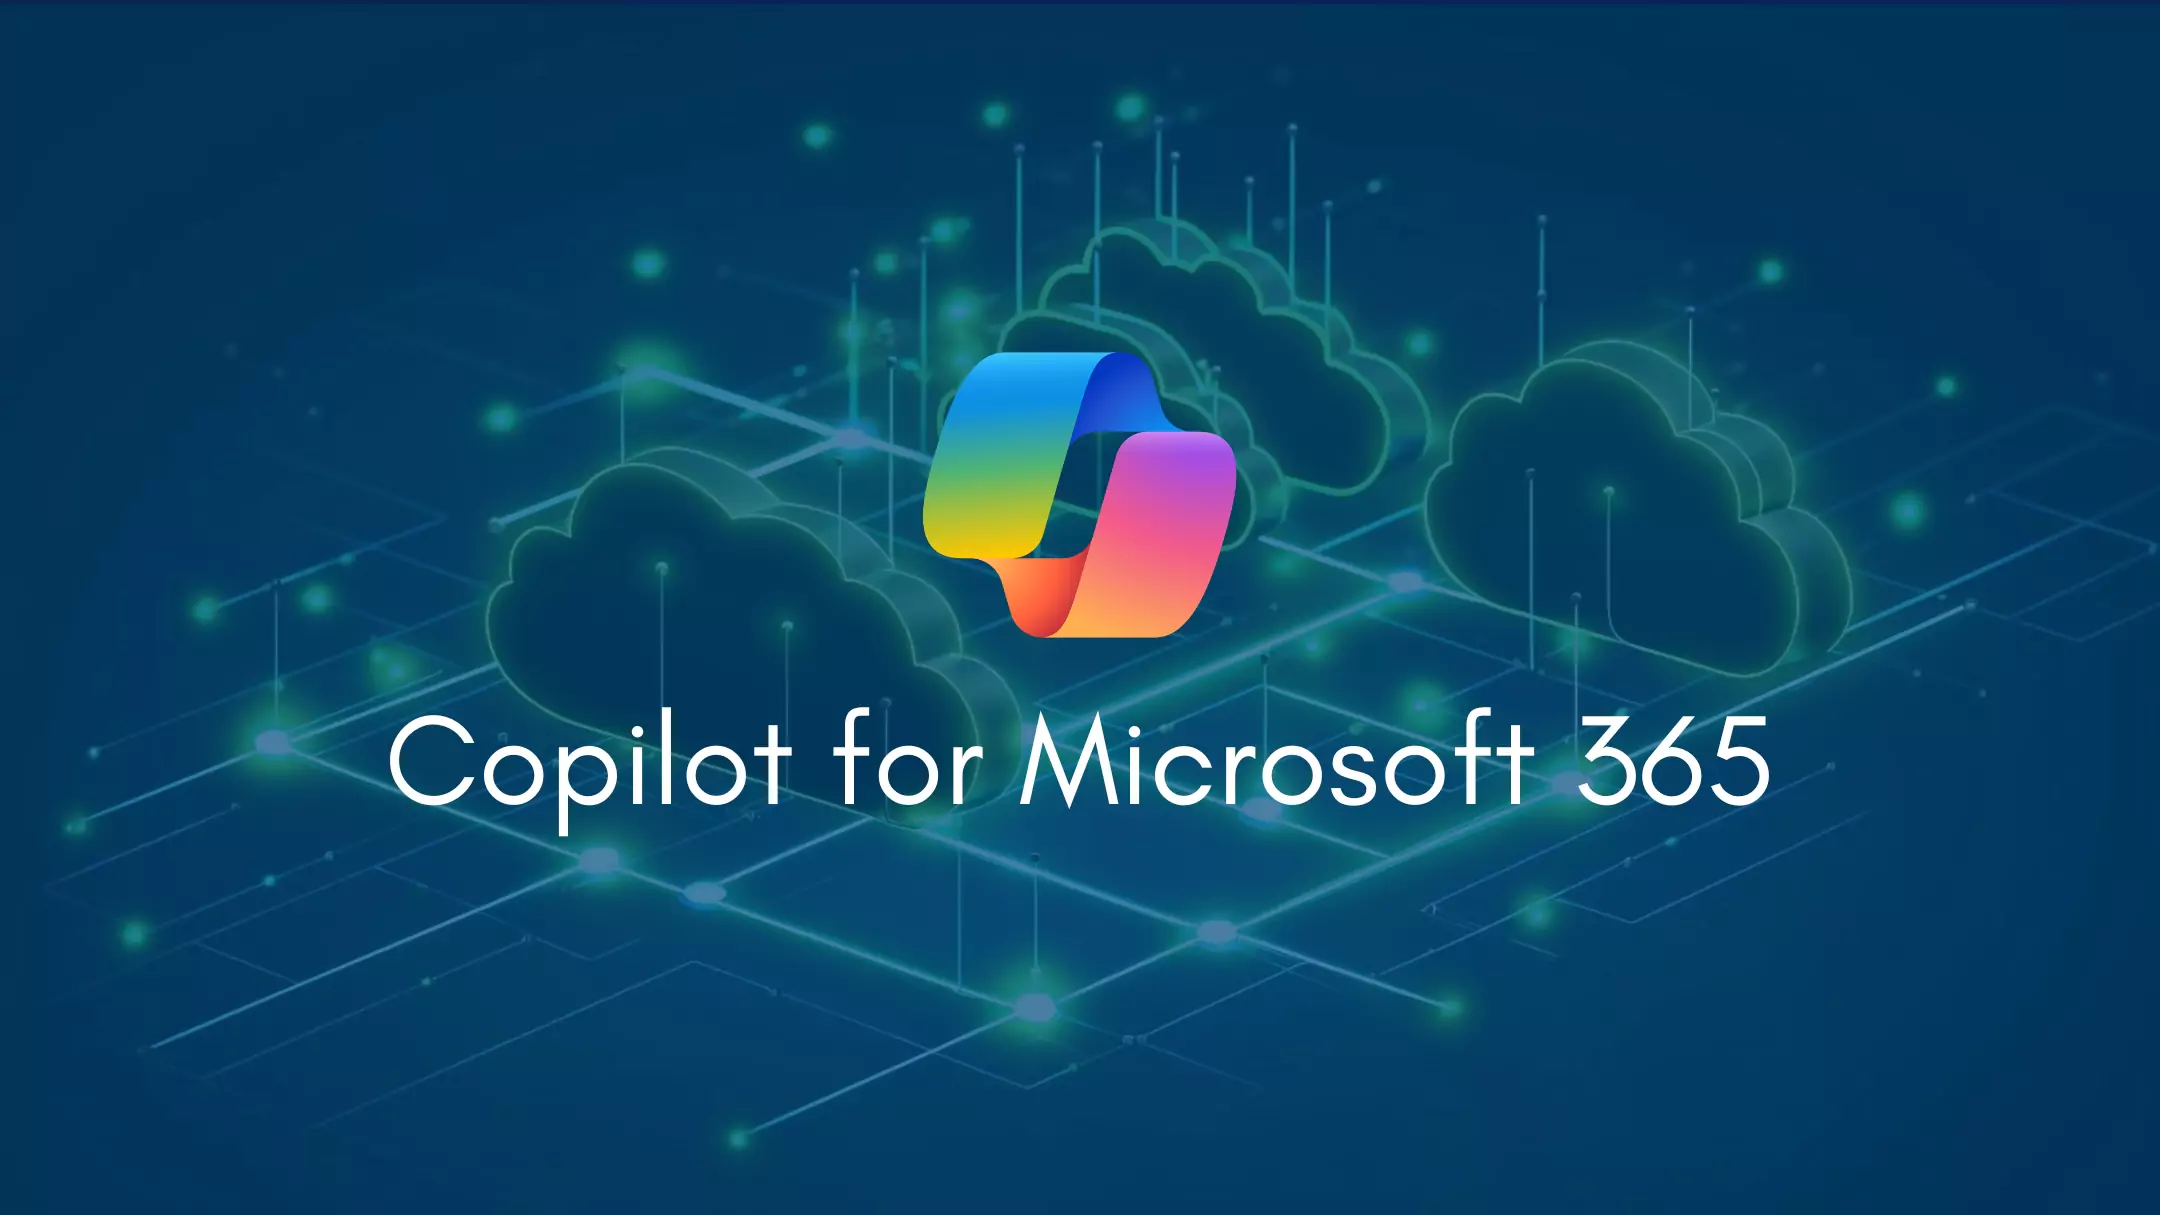 et bilde med isometriske grønne skyer, logoen for copilot og teksten "copilot for microsoft 365"